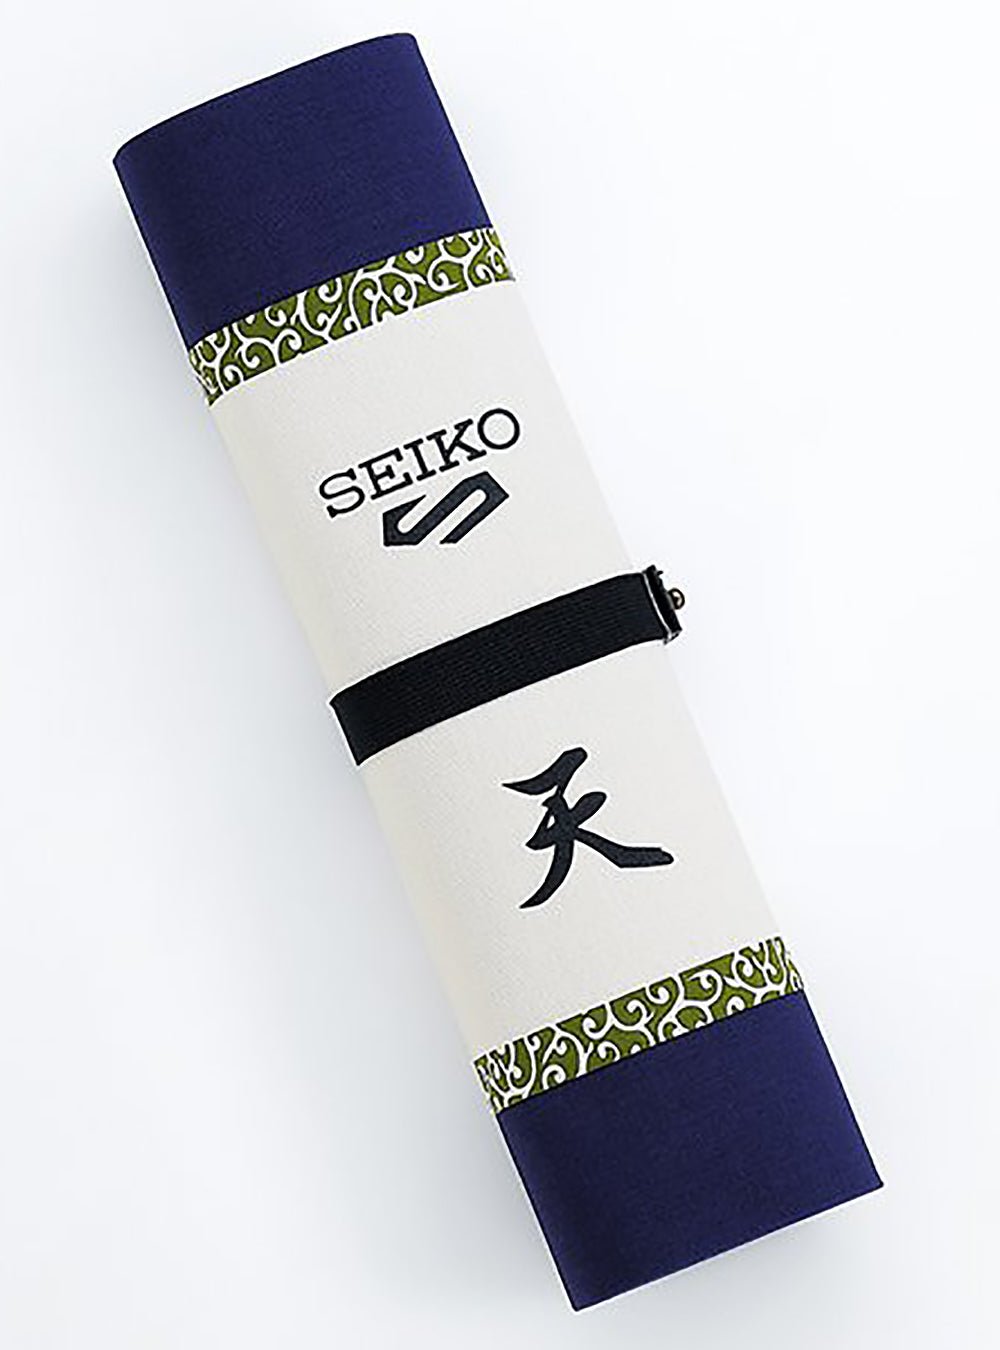 Seiko 5 Sports NARUTO & BORUTO Limited Edition, SARADA UCHIHA Model